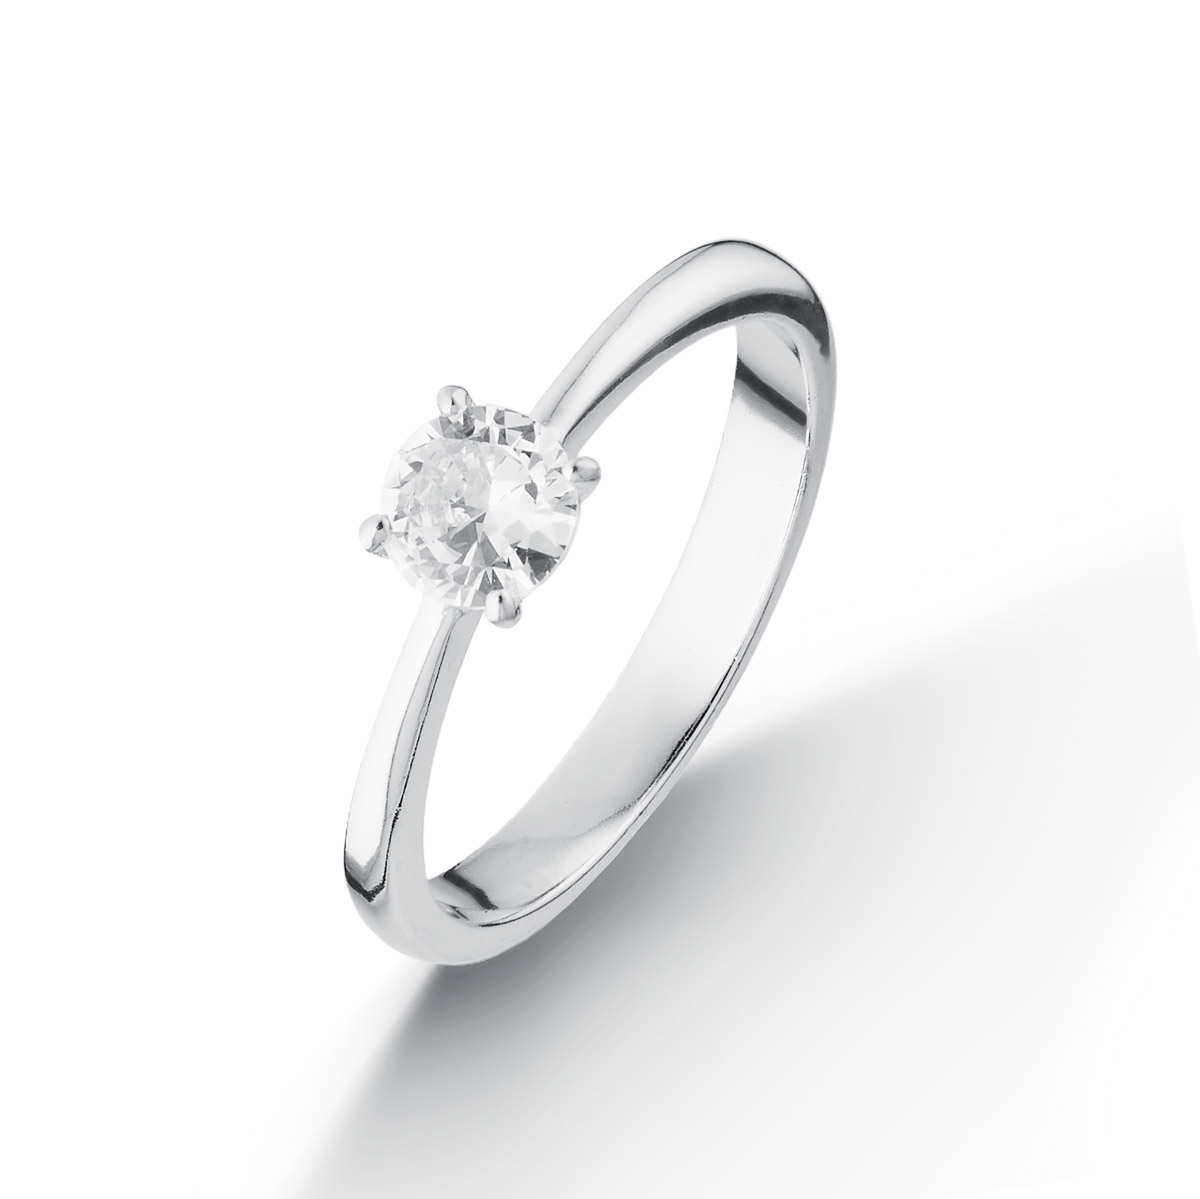 NUBIS® Stříbrný prsten se zirkonem - velikost 56 - NB-5093-56